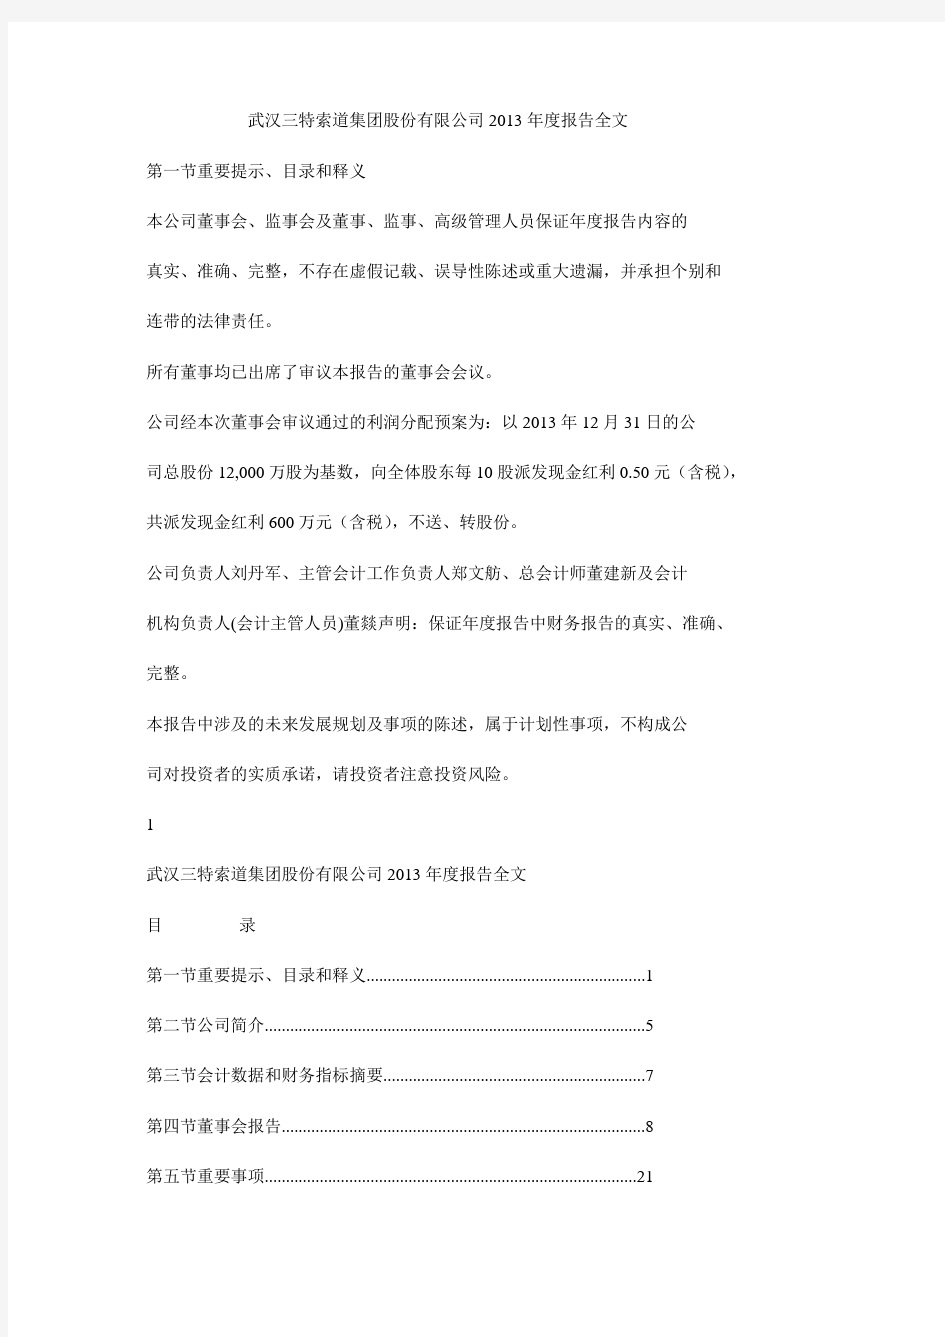 武汉三特索道集团股份有限公司2013年度报告全文